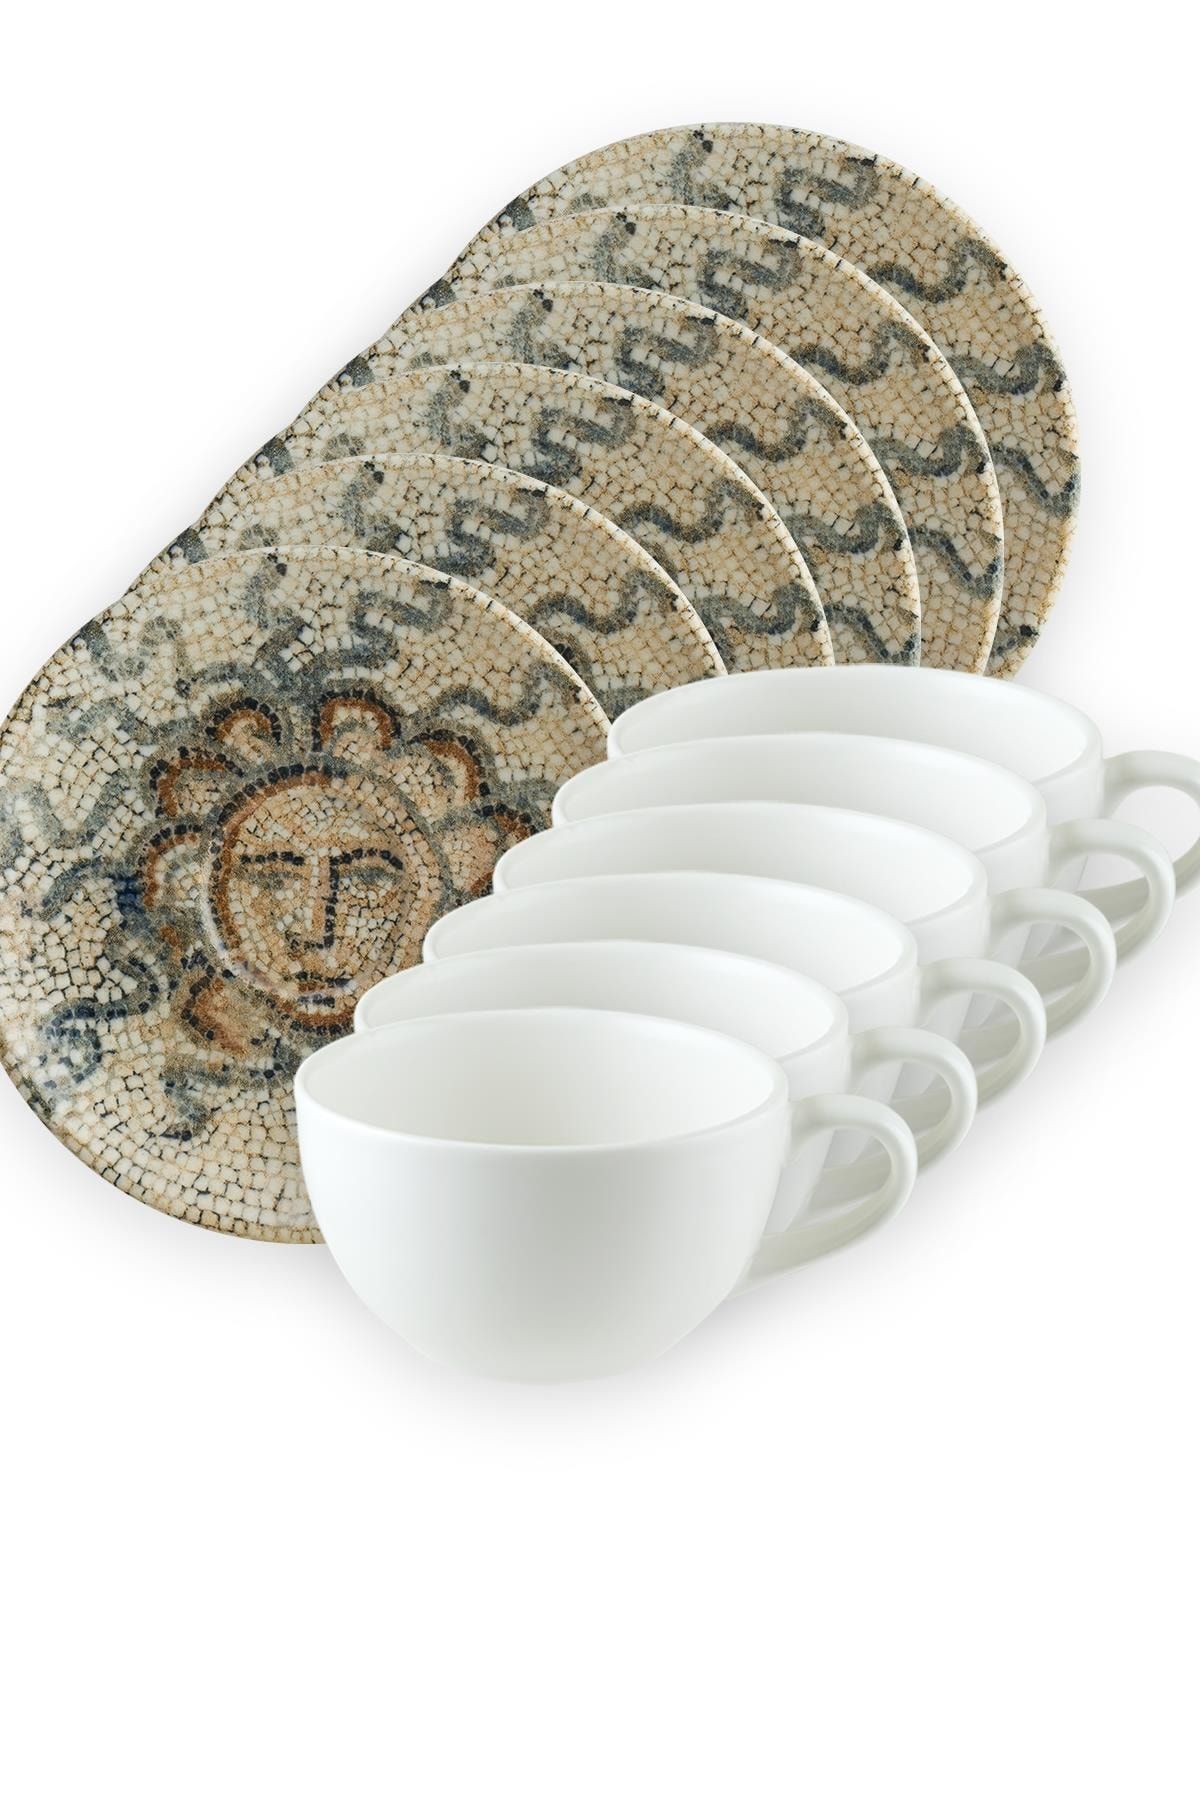 Bonna Porselen Mezopotamya Güneş Gourmet Kahve Fincan Takımı 6 Kişilik 16 Cm